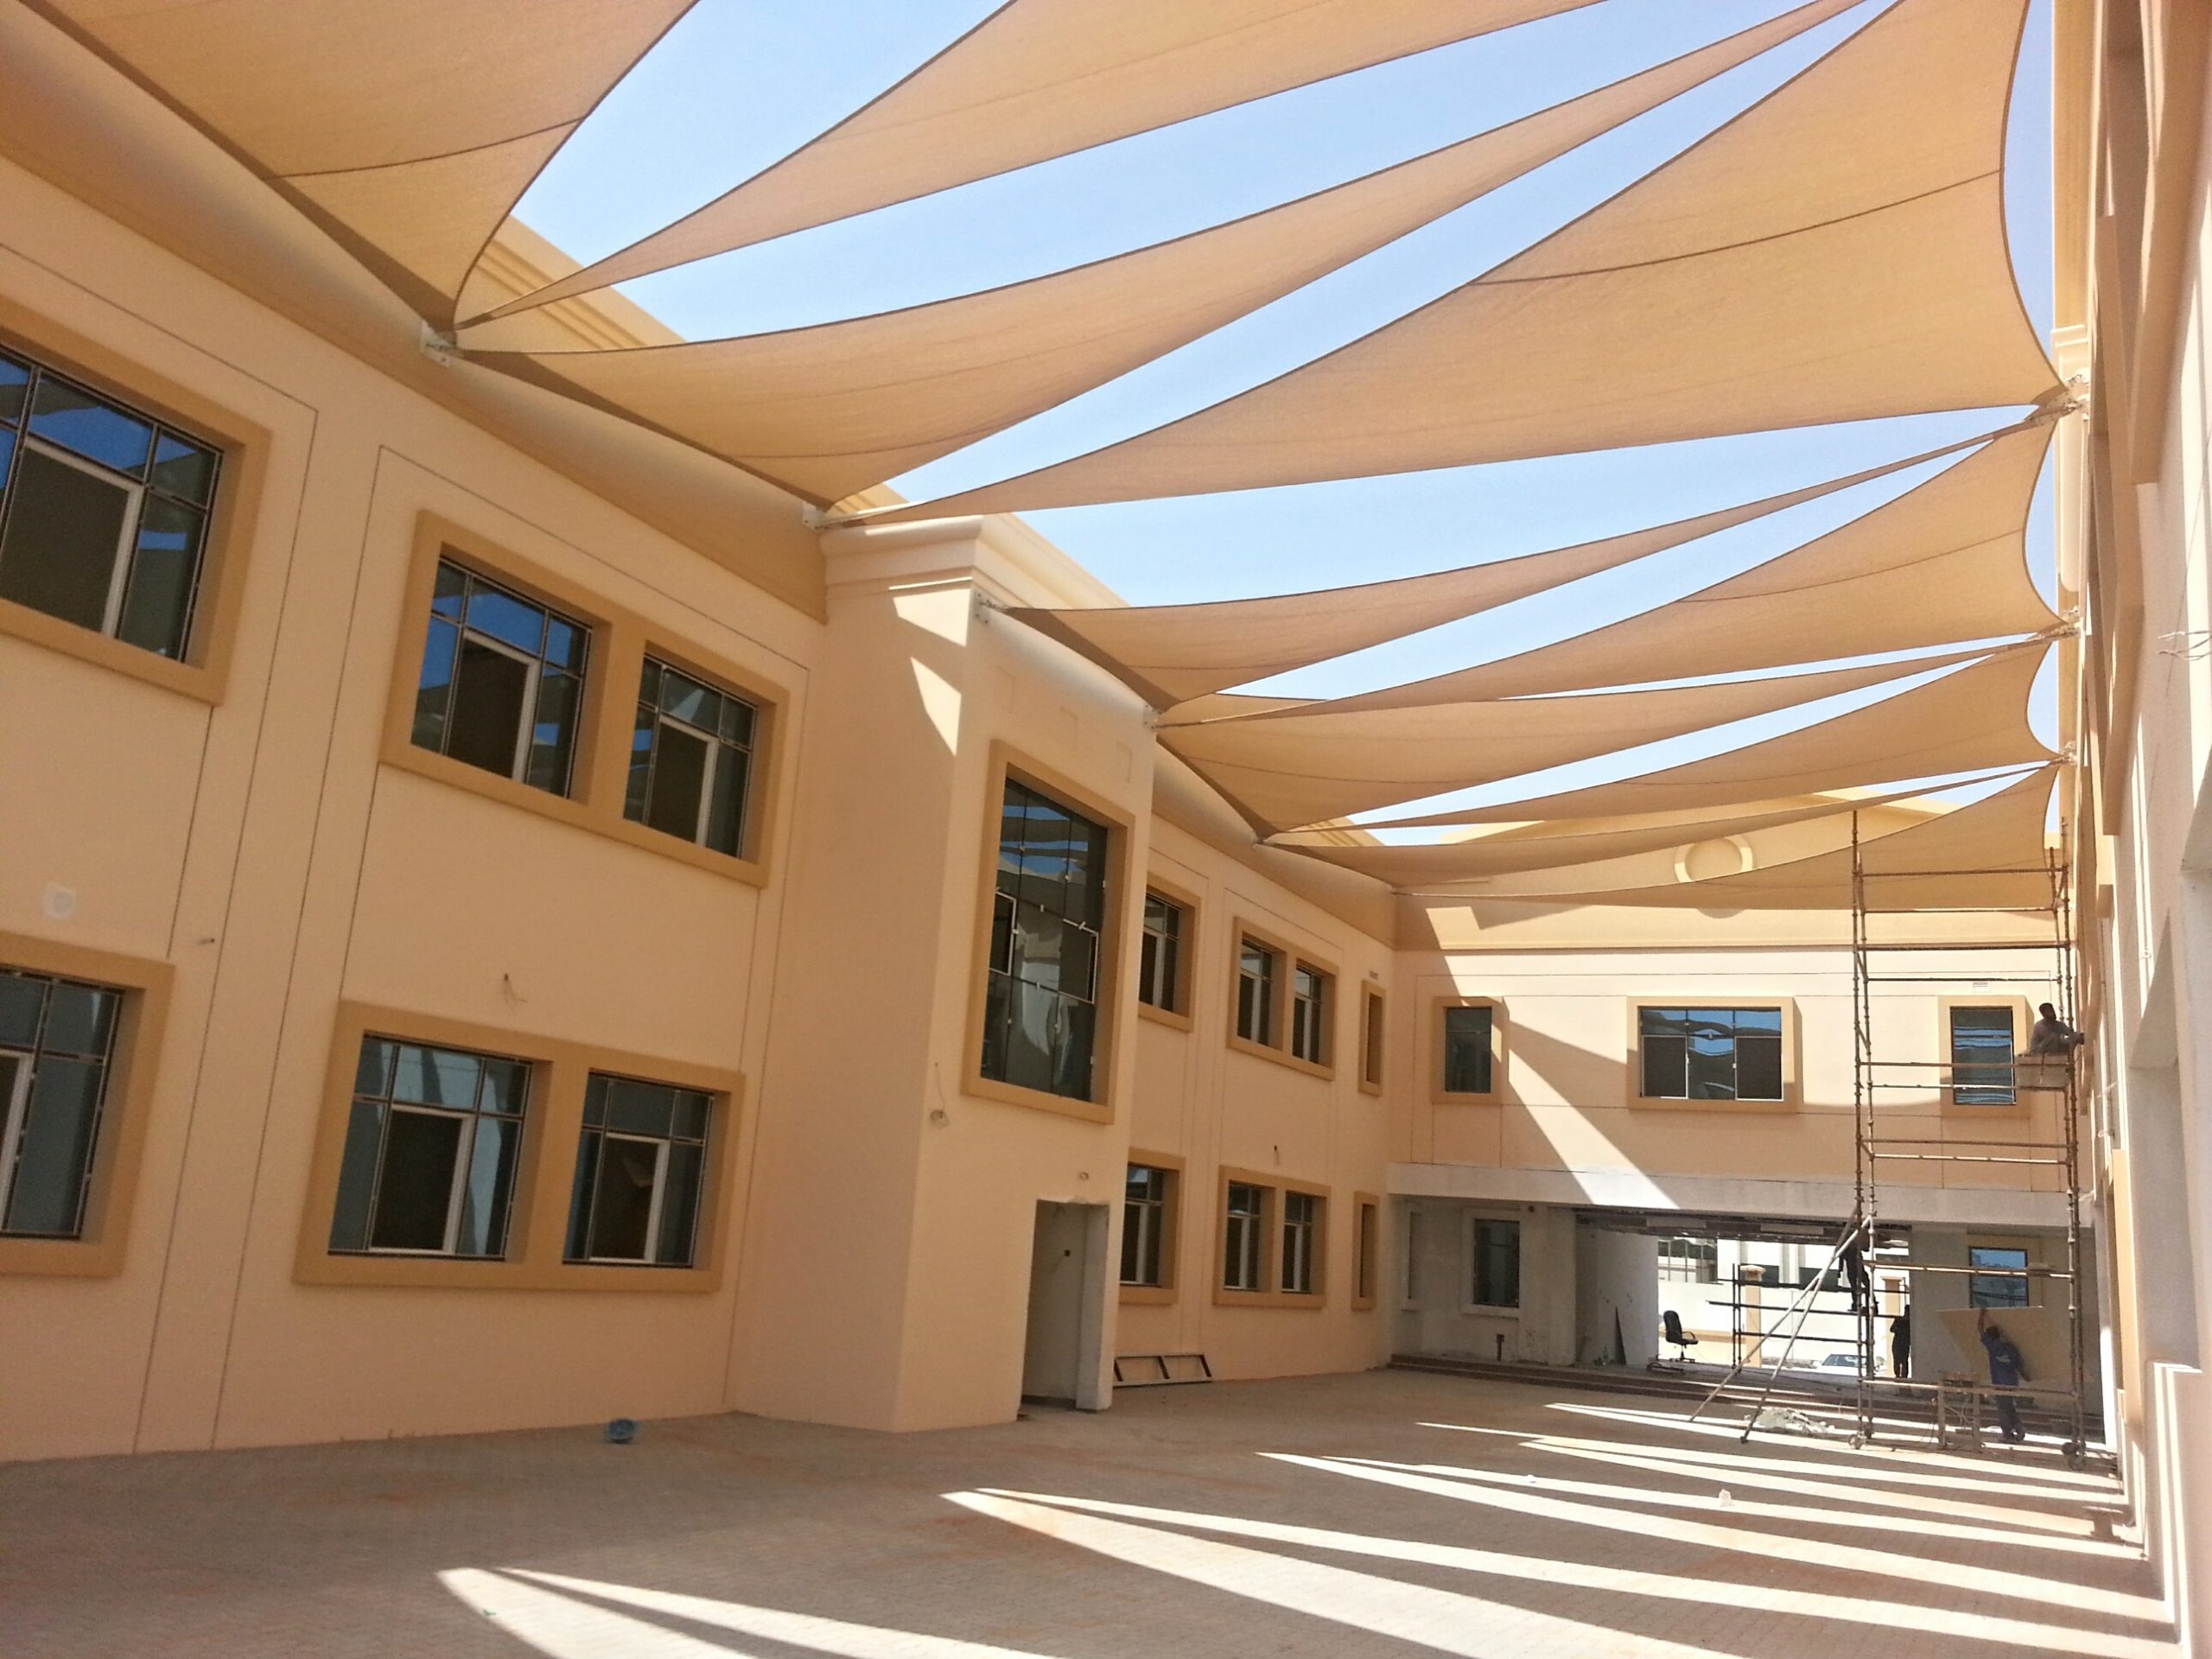 Al Sahar School – Sharjah